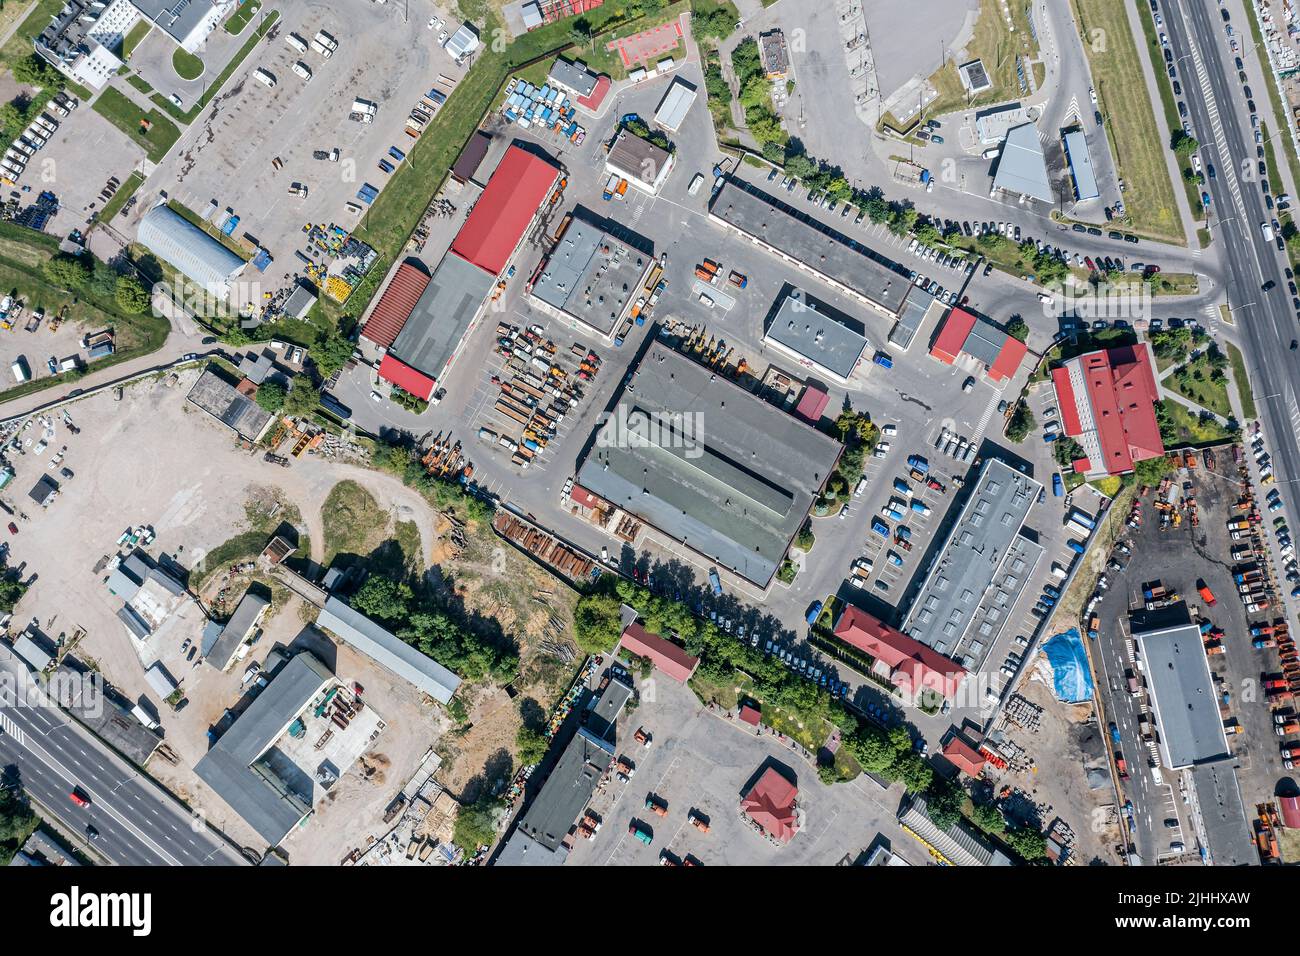 vista superior aérea de almacenes industriales o edificios de fábricas en la zona suburbana de la ciudad Foto de stock